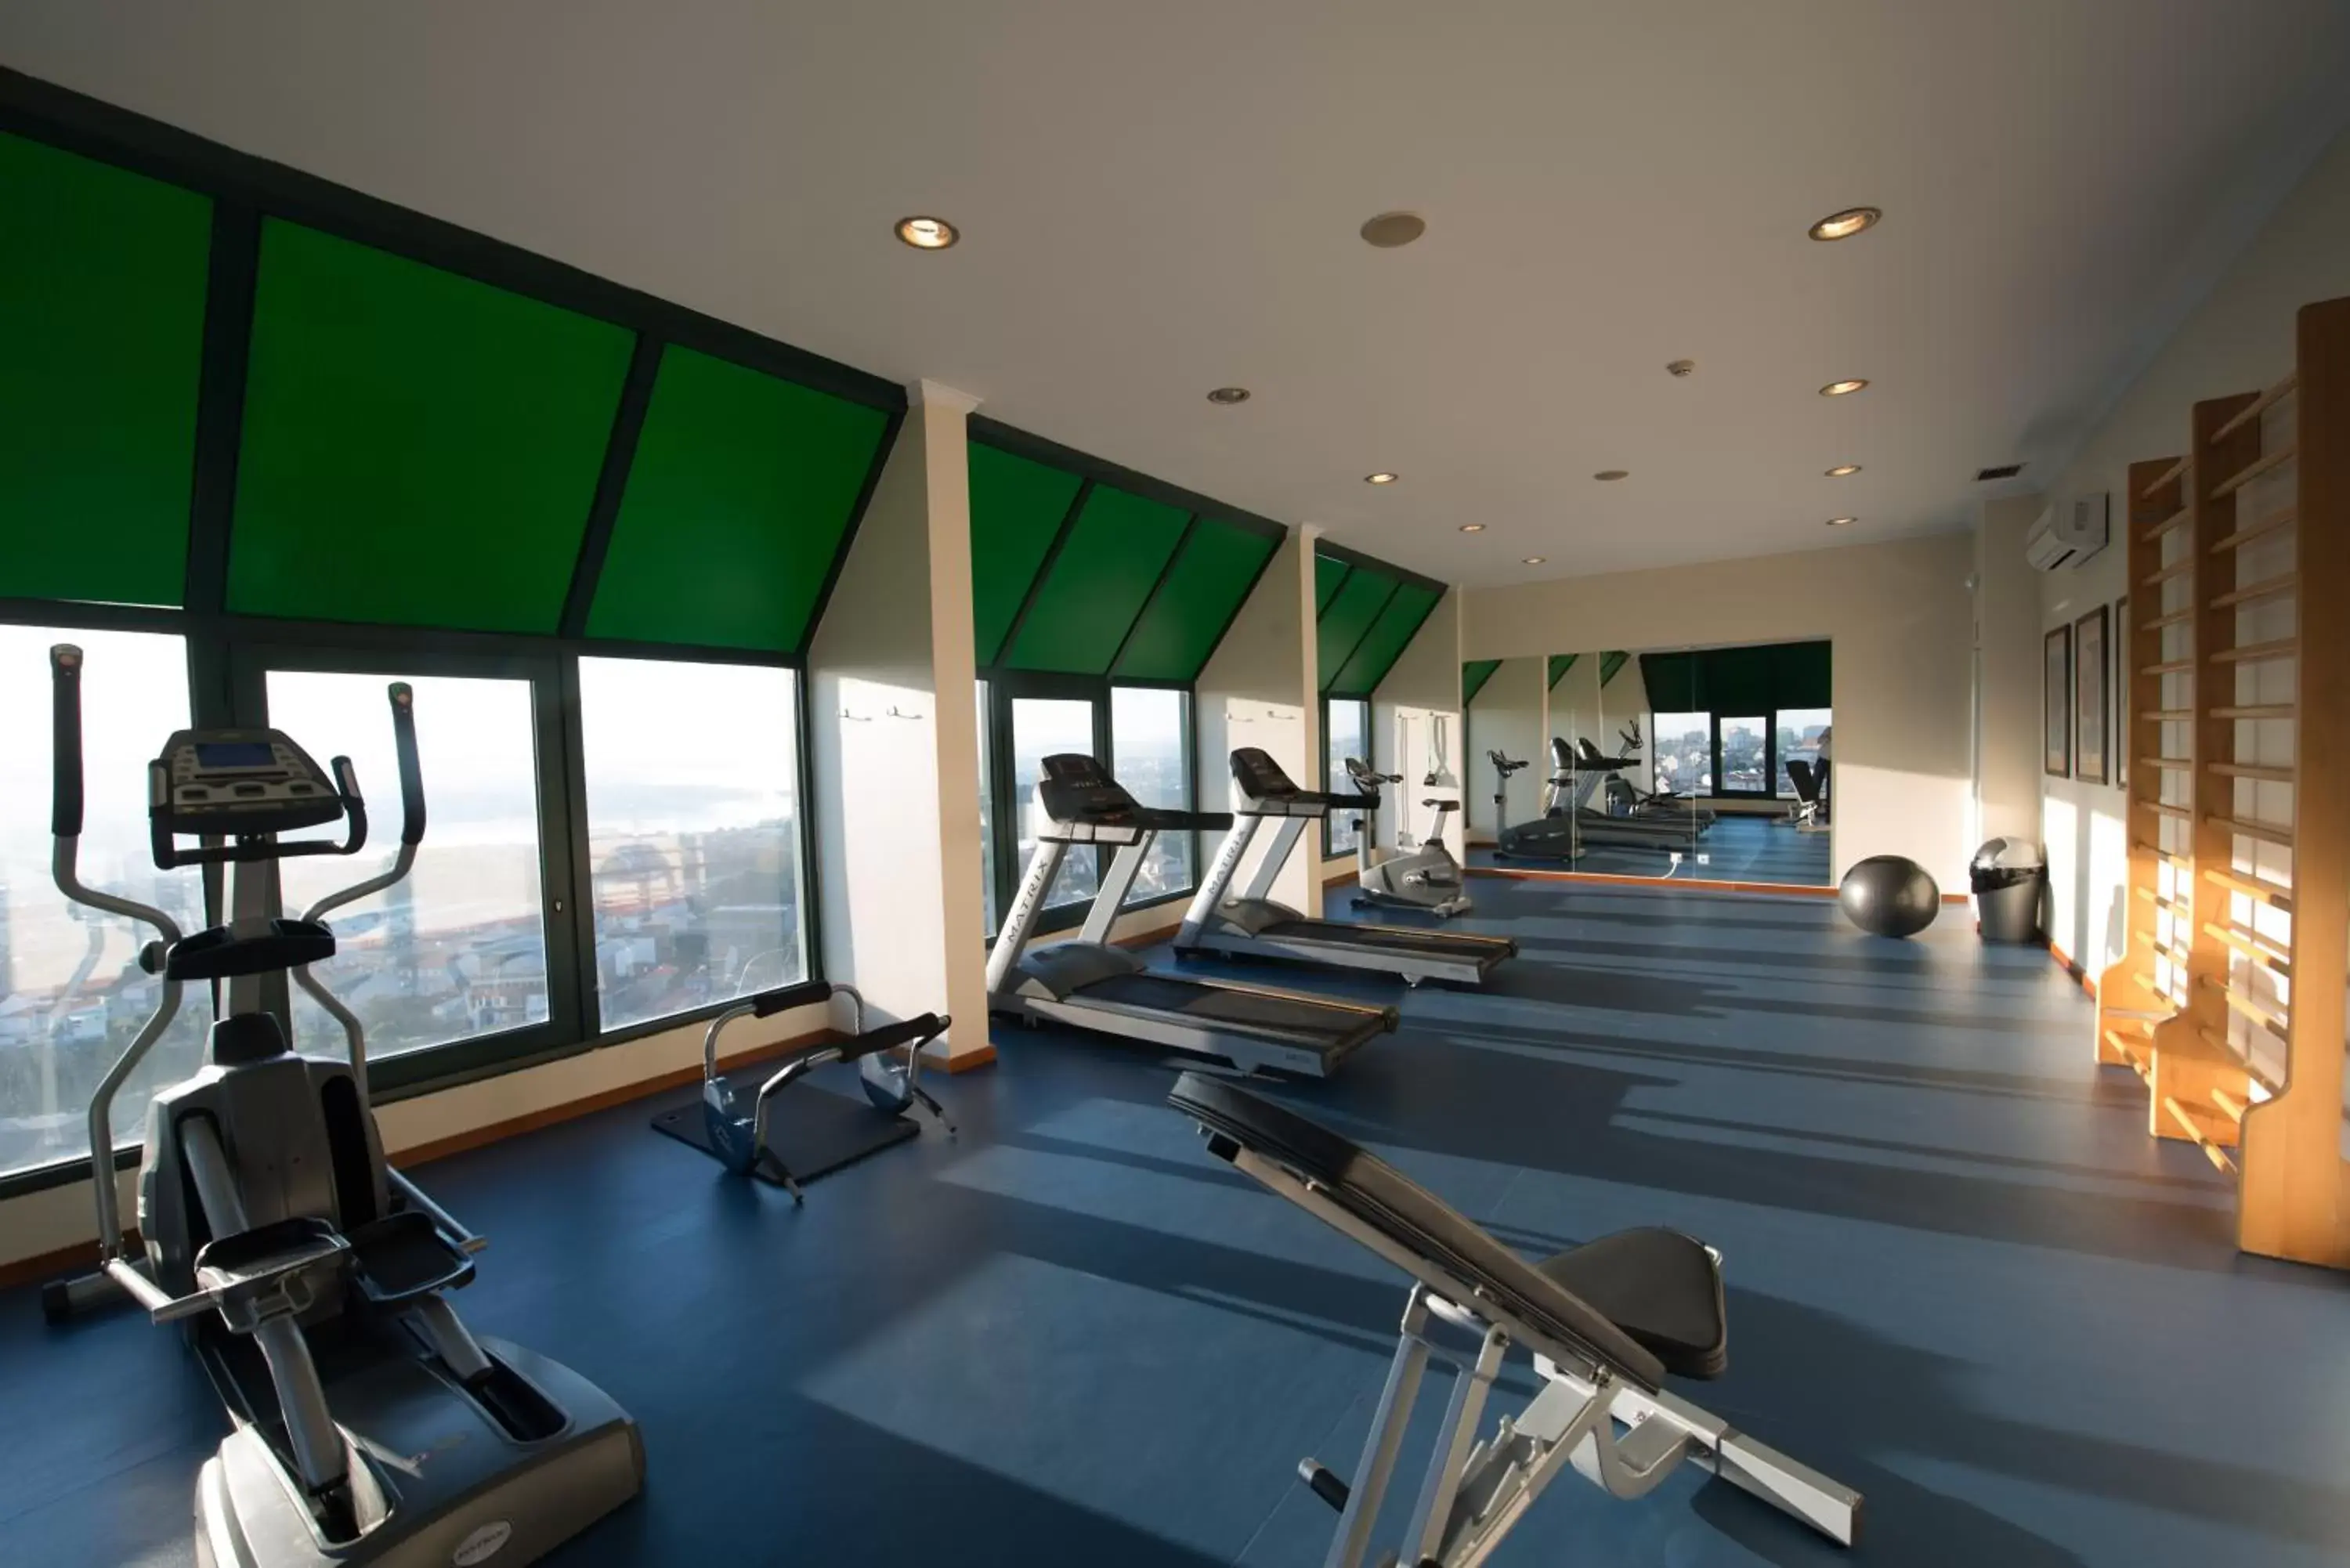 Fitness centre/facilities, Fitness Center/Facilities in Vila Gale Porto - Centro